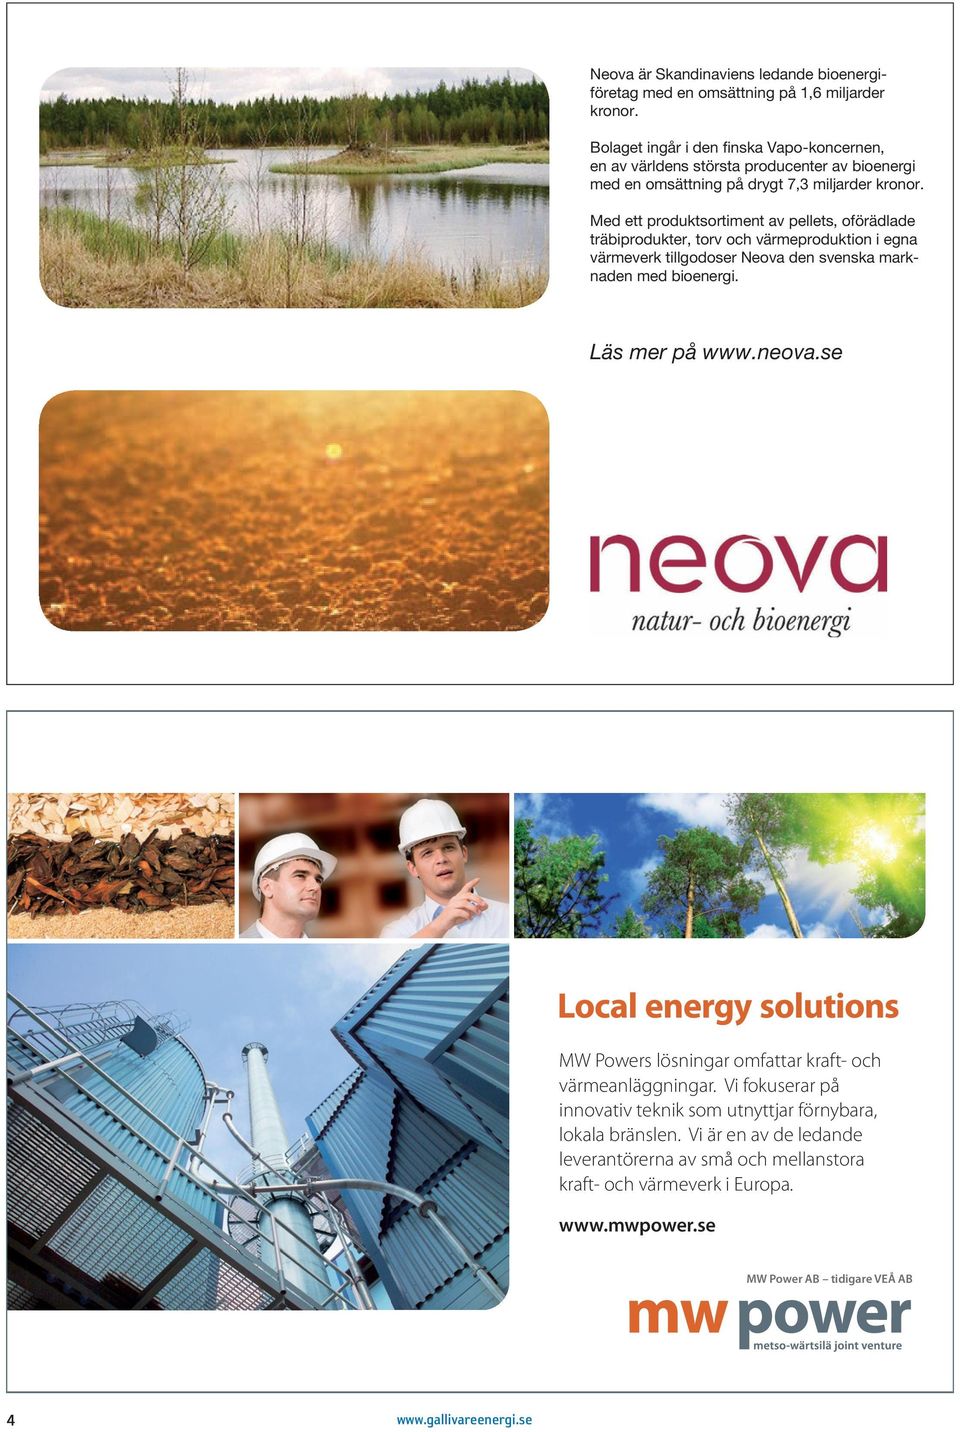 Med ett produktsortiment av pellets, oförädlade träbiprodukter, torv och värmeproduktion i egna värmeverk tillgodoser Neova den svenska marknaden med bioenergi. Läs mer på www.neova.